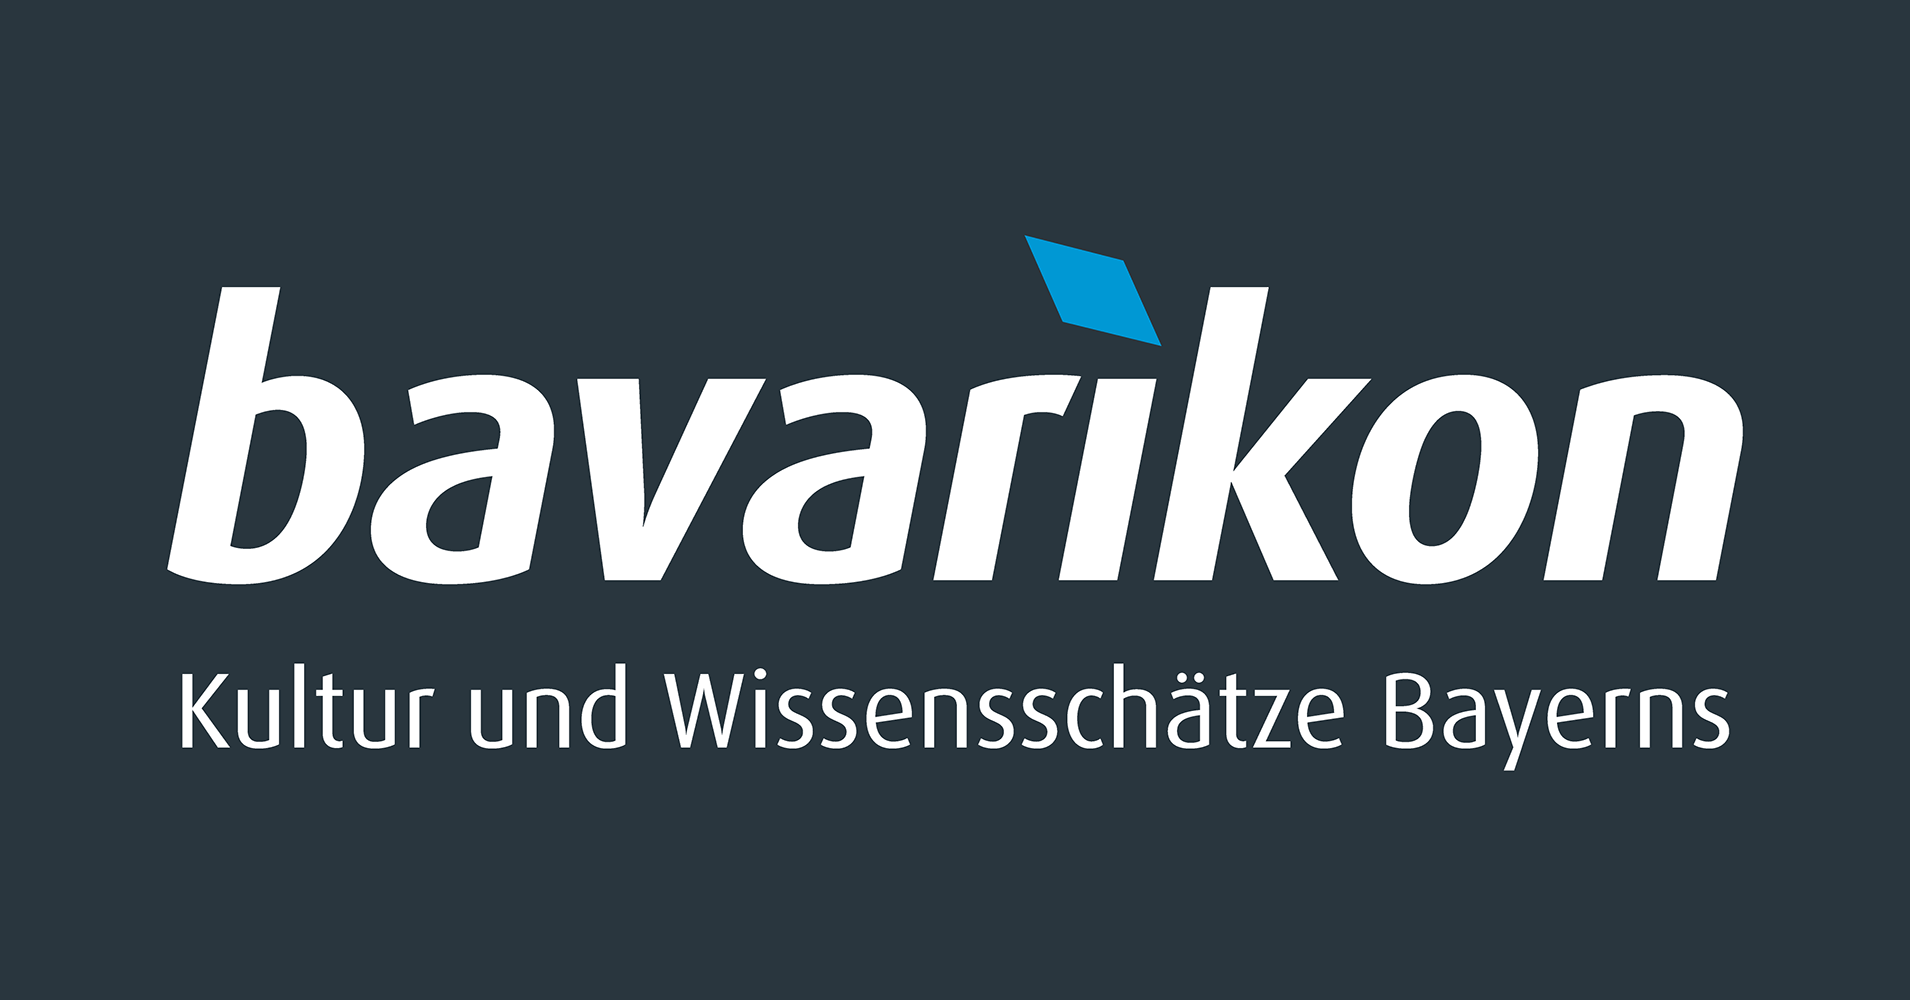 www.bavarikon.de